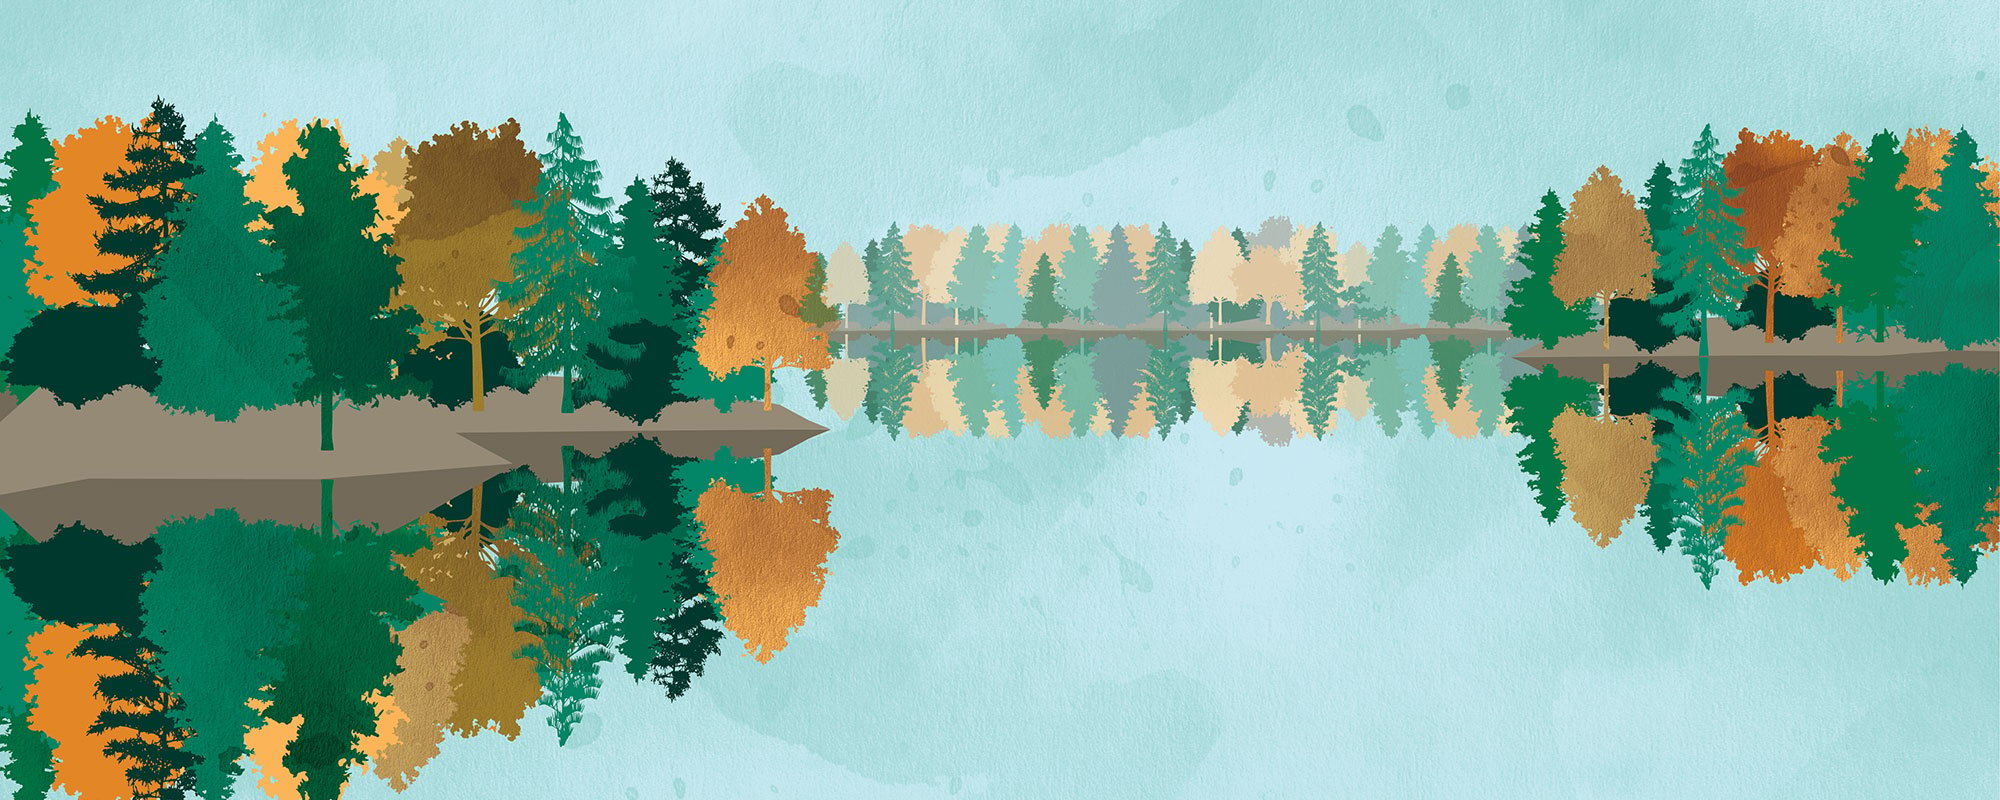 Kuvituskuva järvi ja puita